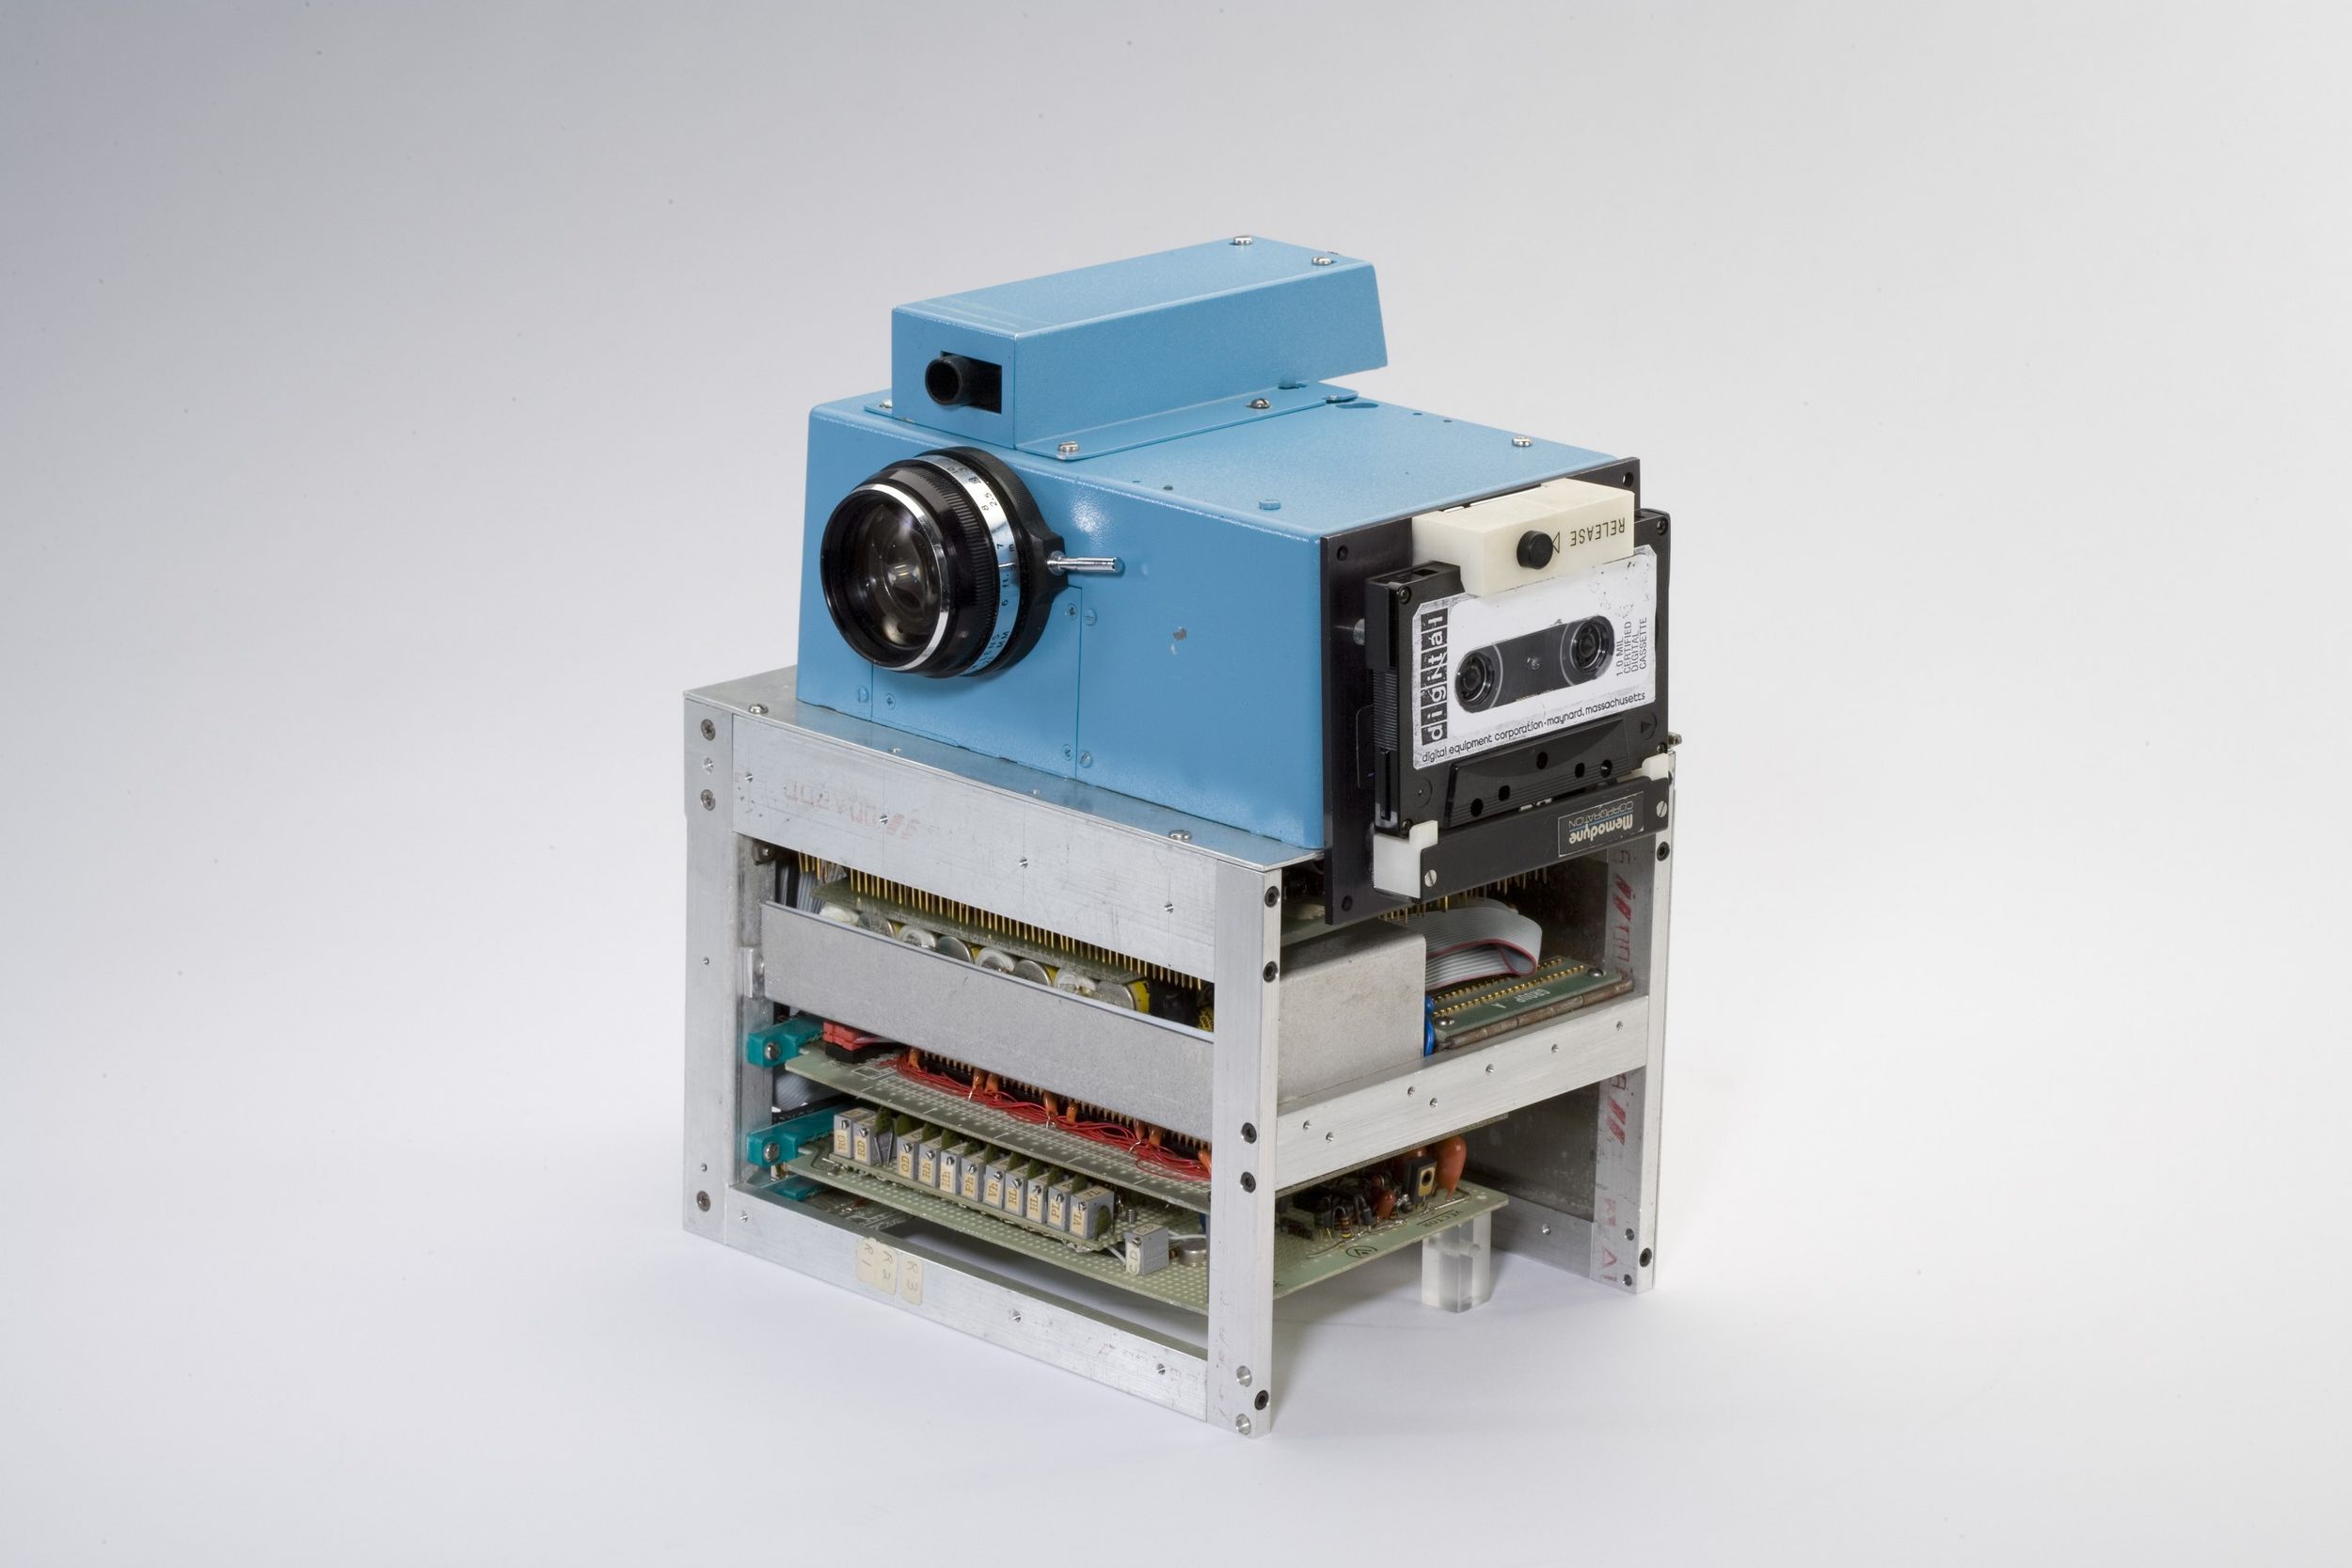 Le tout premier appareil photo numérique - Photos Futura